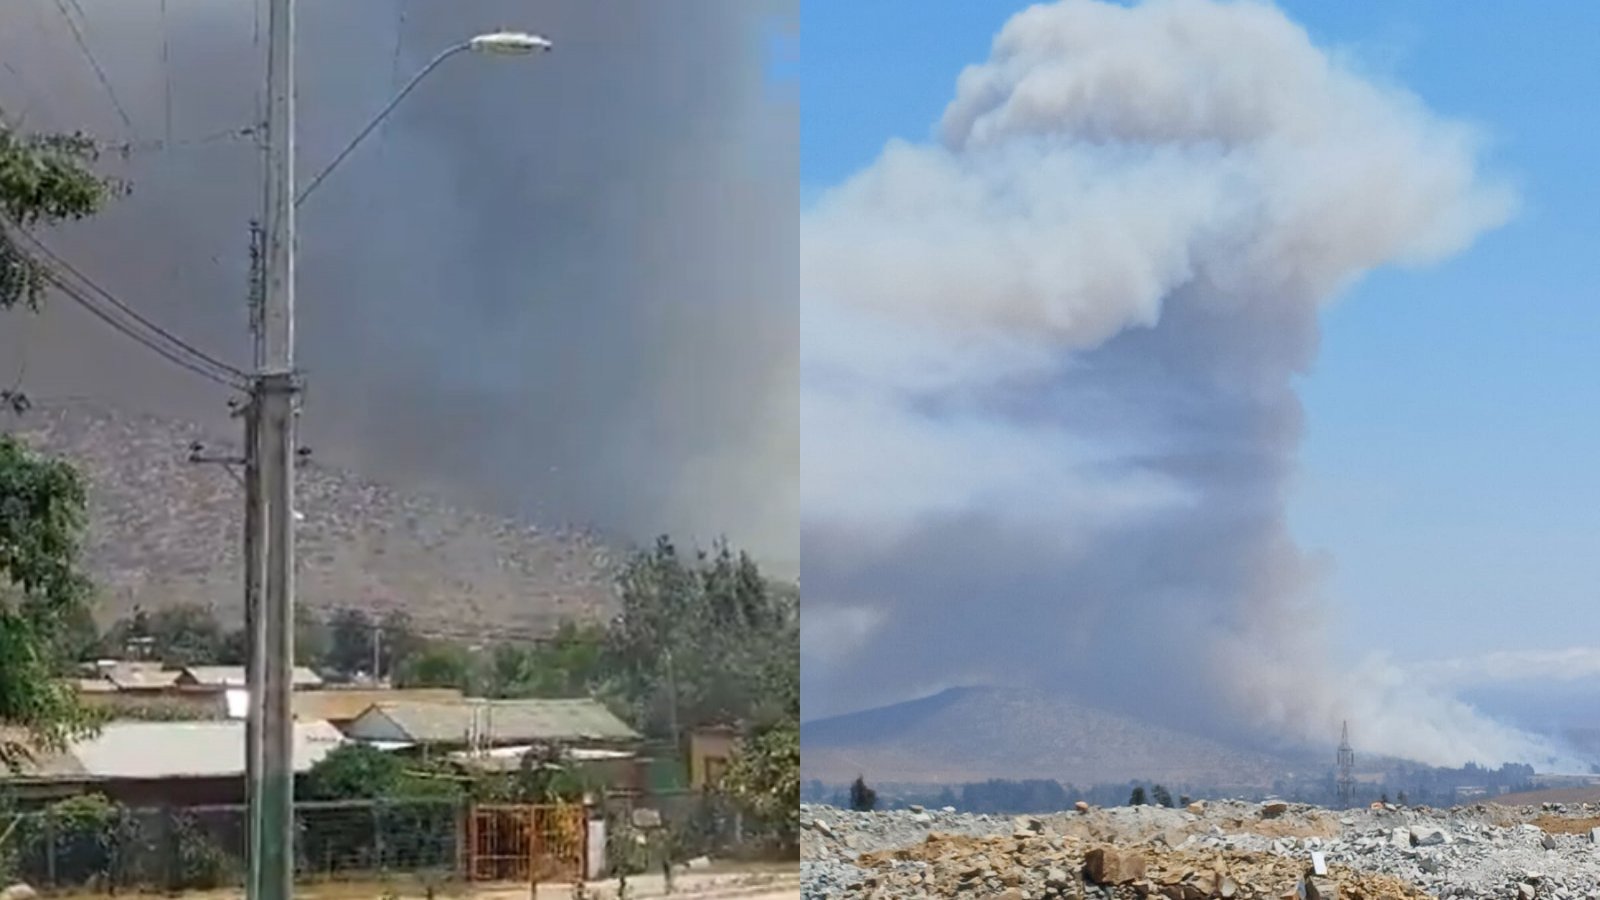 "Activo con avance rápido": Alerta Roja en comuna de Papudo por incendio forestal